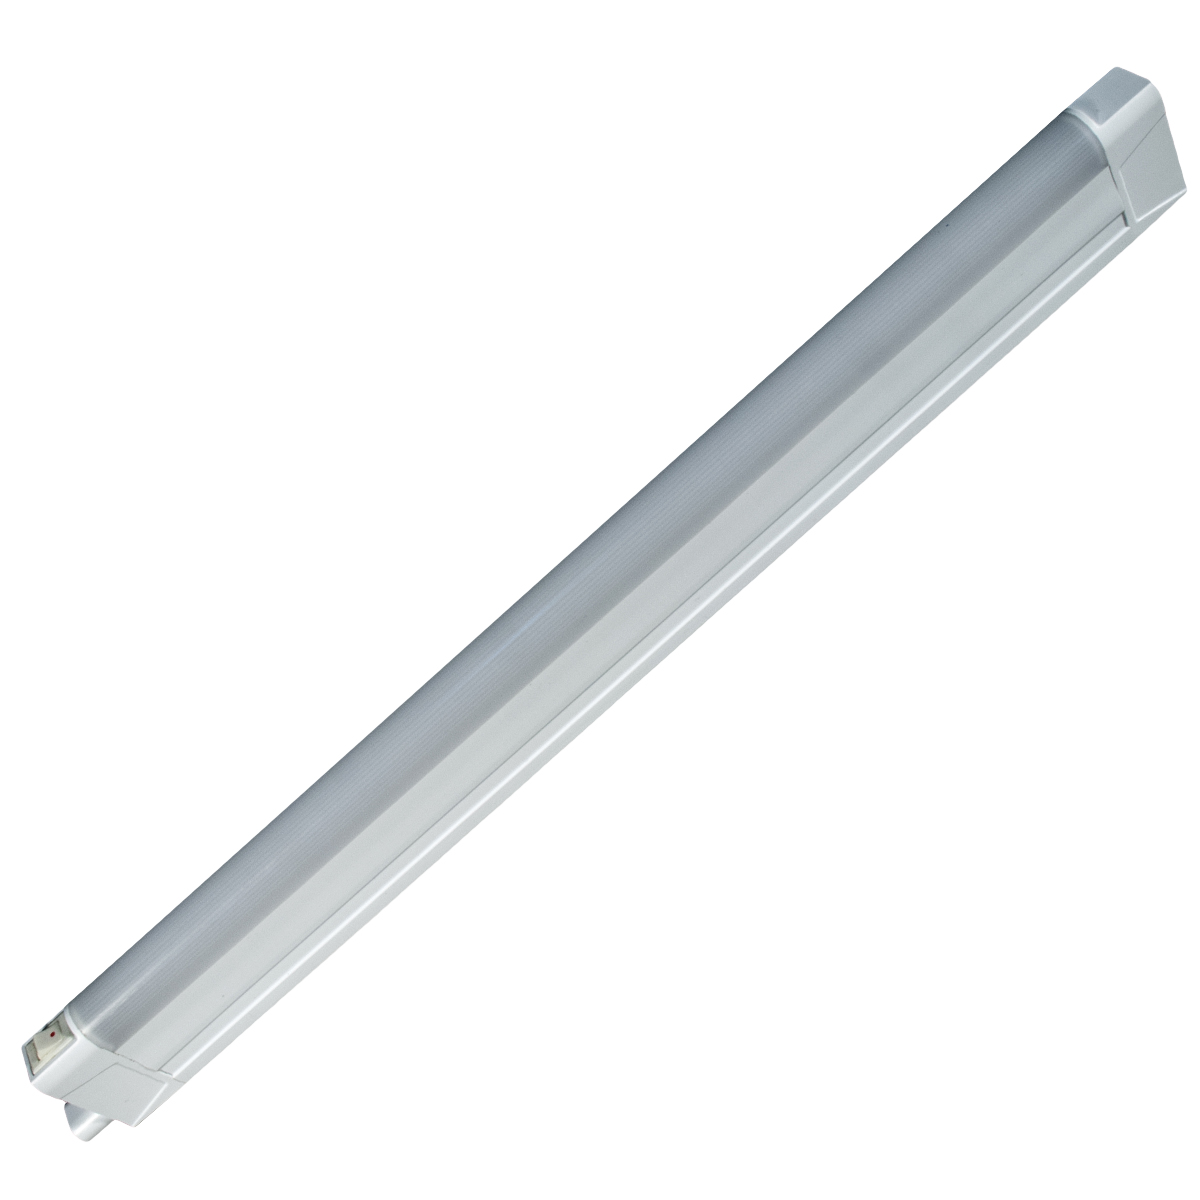 Линейный светодиодный светильник GLS LED Line 3, 4200К, 618 мм светильник светодиодный luazon ск 077 usb 2 5 вт 8 диодов 200 лм 3000 к теплый белый